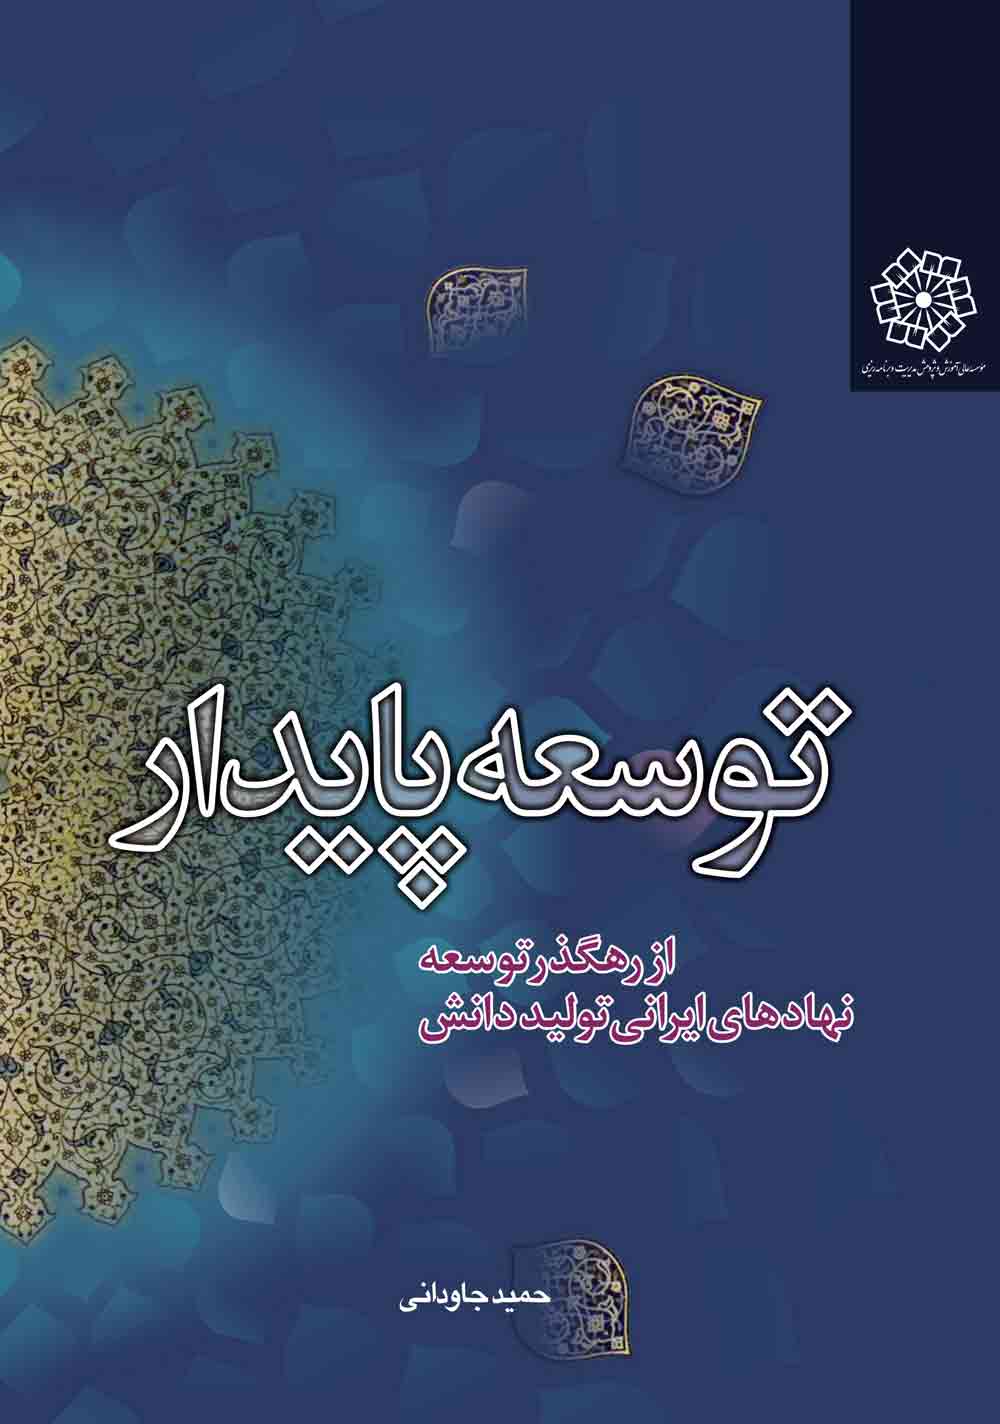 توسعه پایدار از رهگذر توسعه نهادهای ایرانی تولید دانش